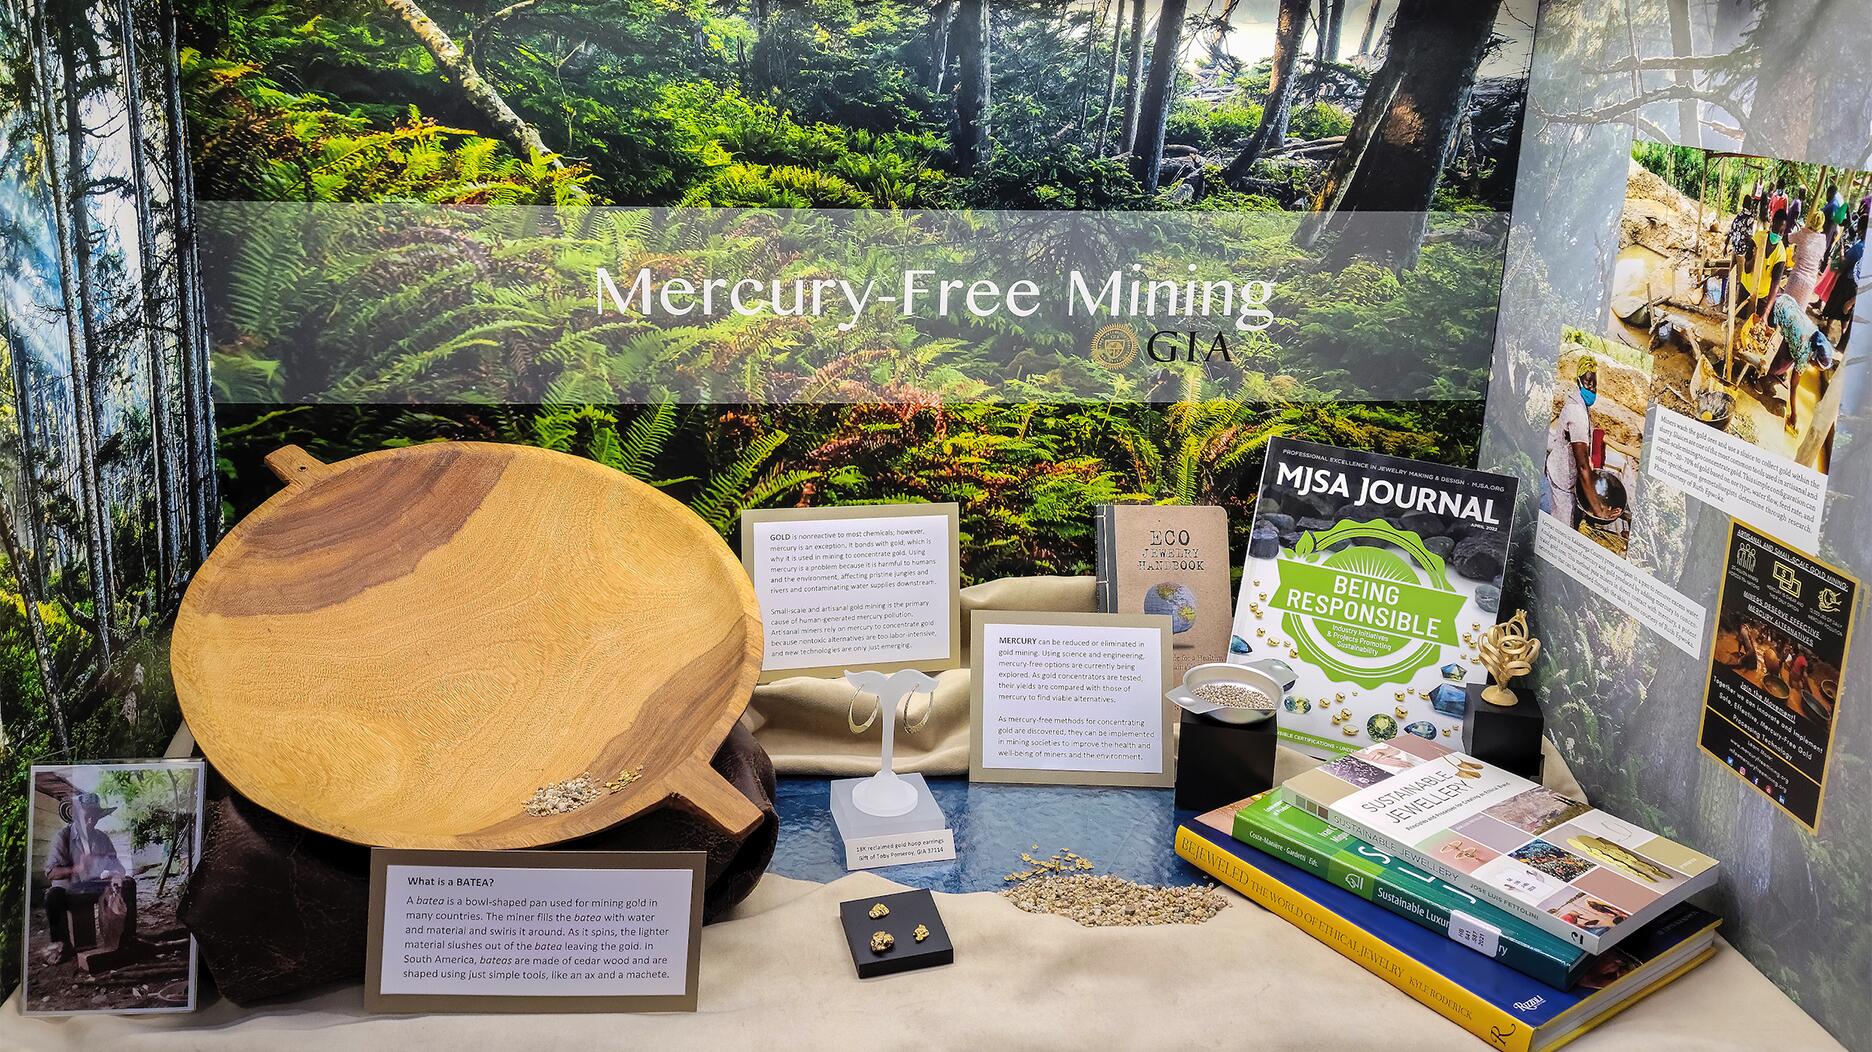 GIA’s Mercury-Free Mining Library Exhibit Wins Award